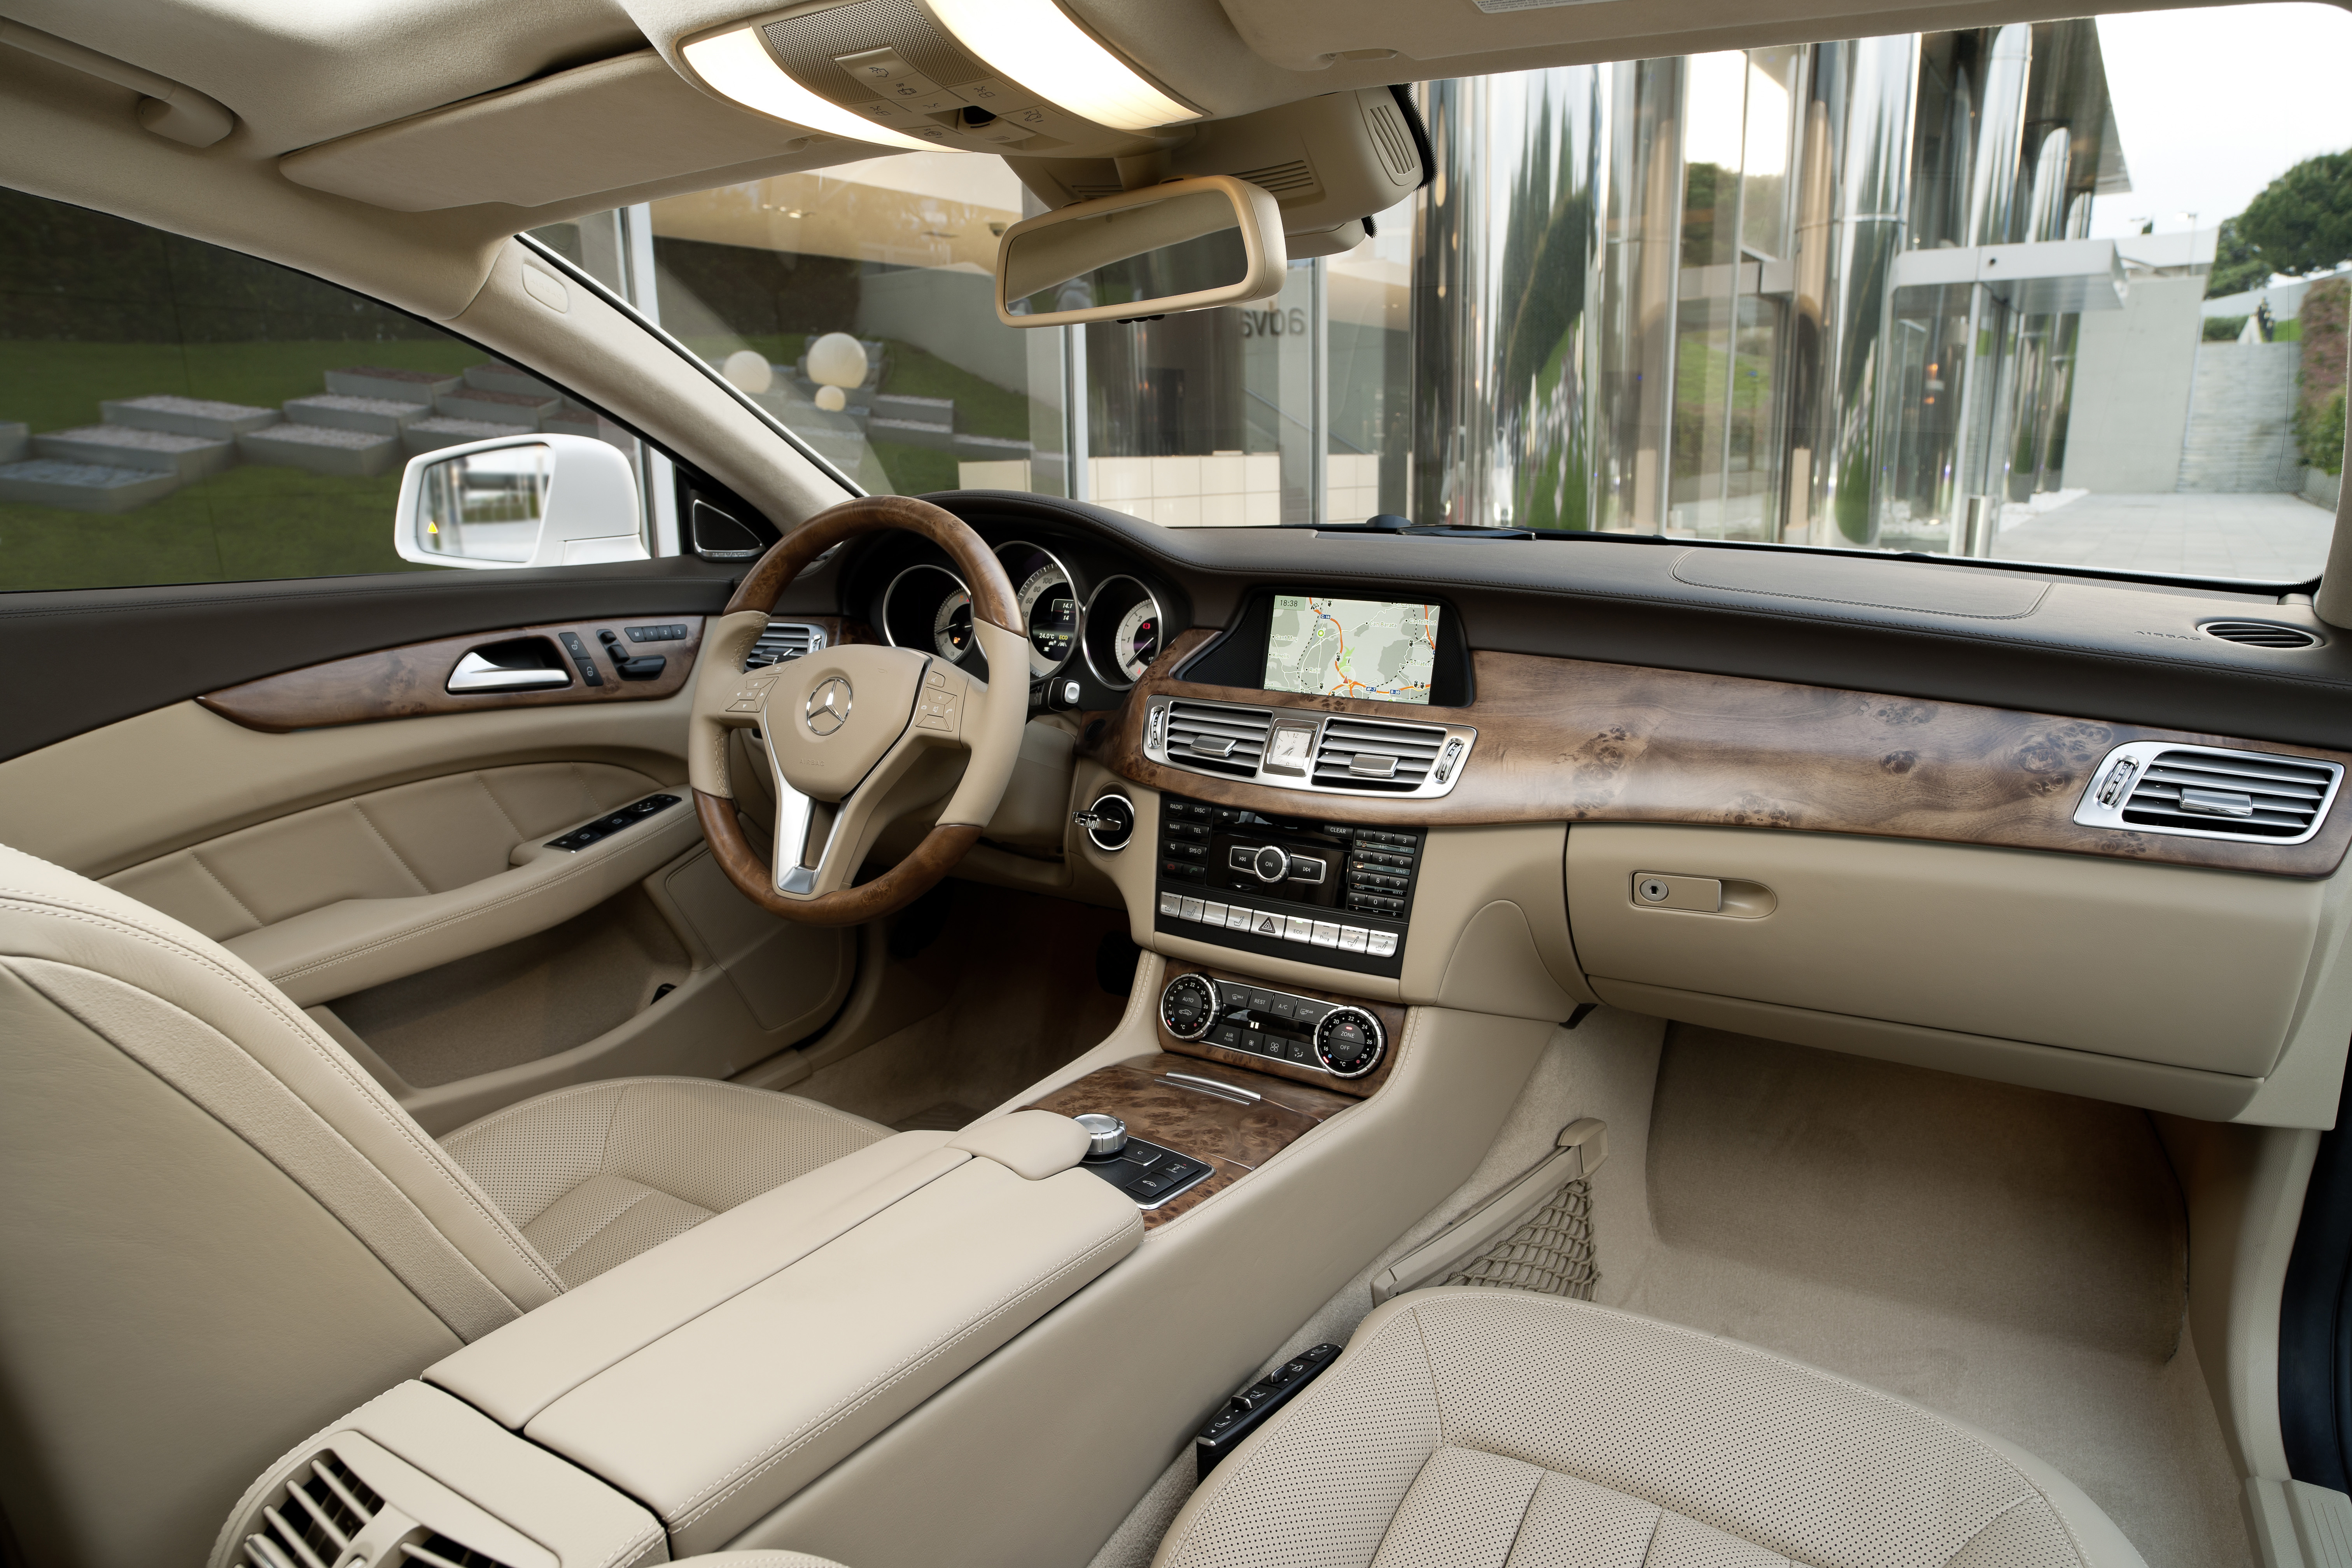 Mercedes CLS 250 CDI Interior